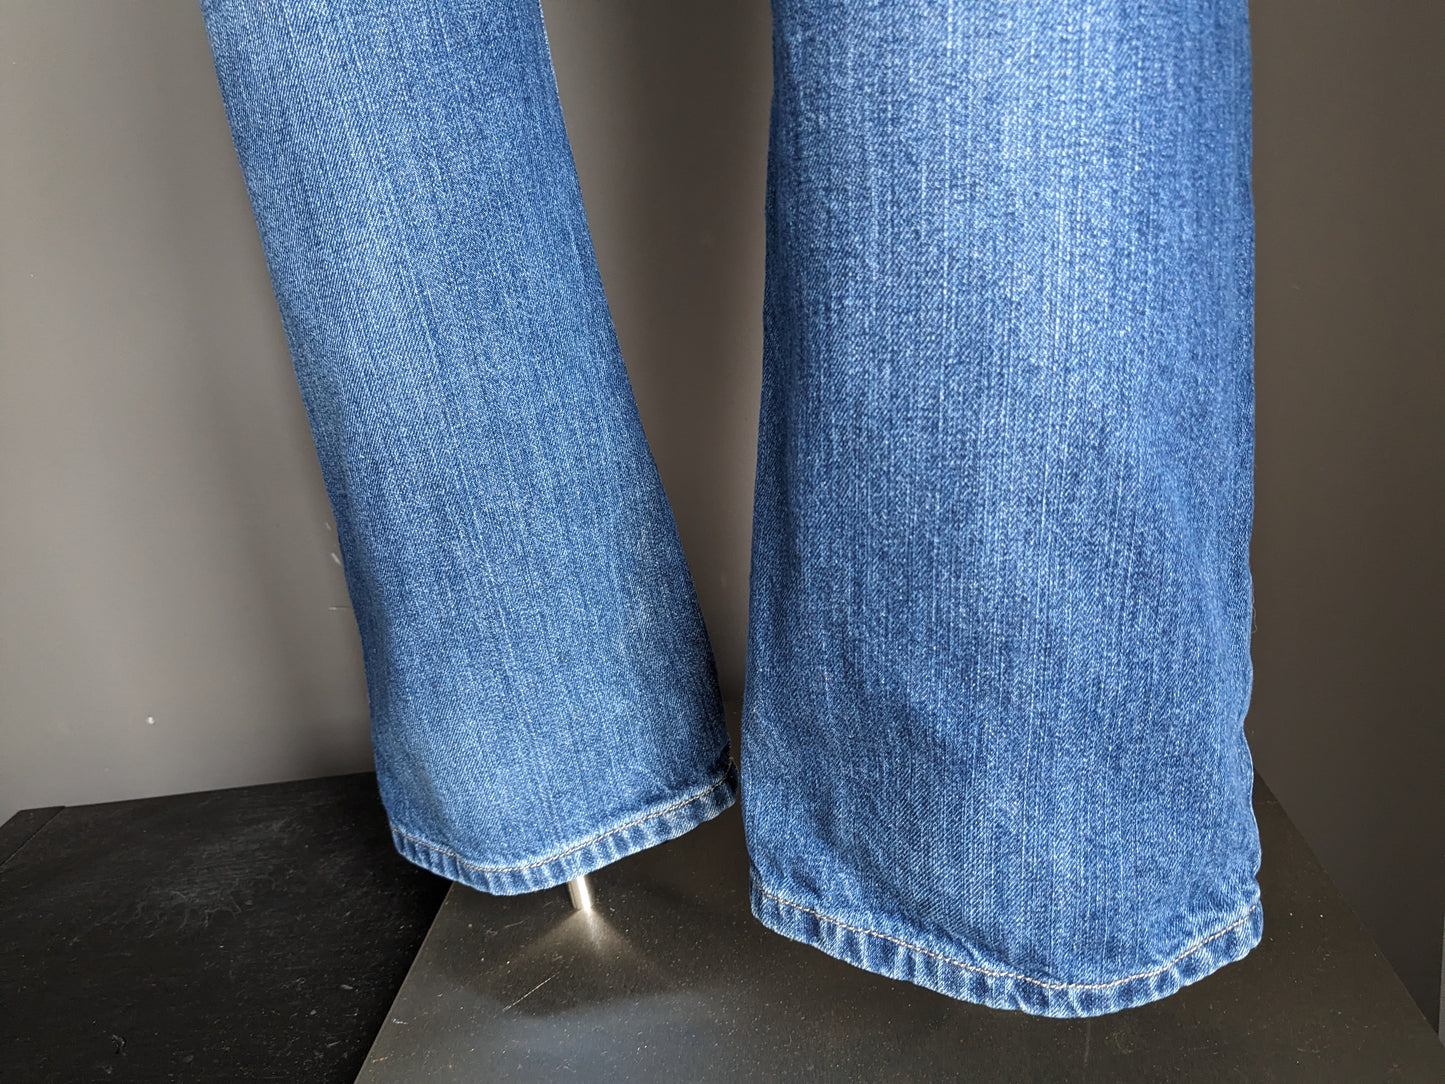 Big Star Jeans. Colorato blu. Digita Rogar. Adattamento regolare. Taglia W36 - L32.